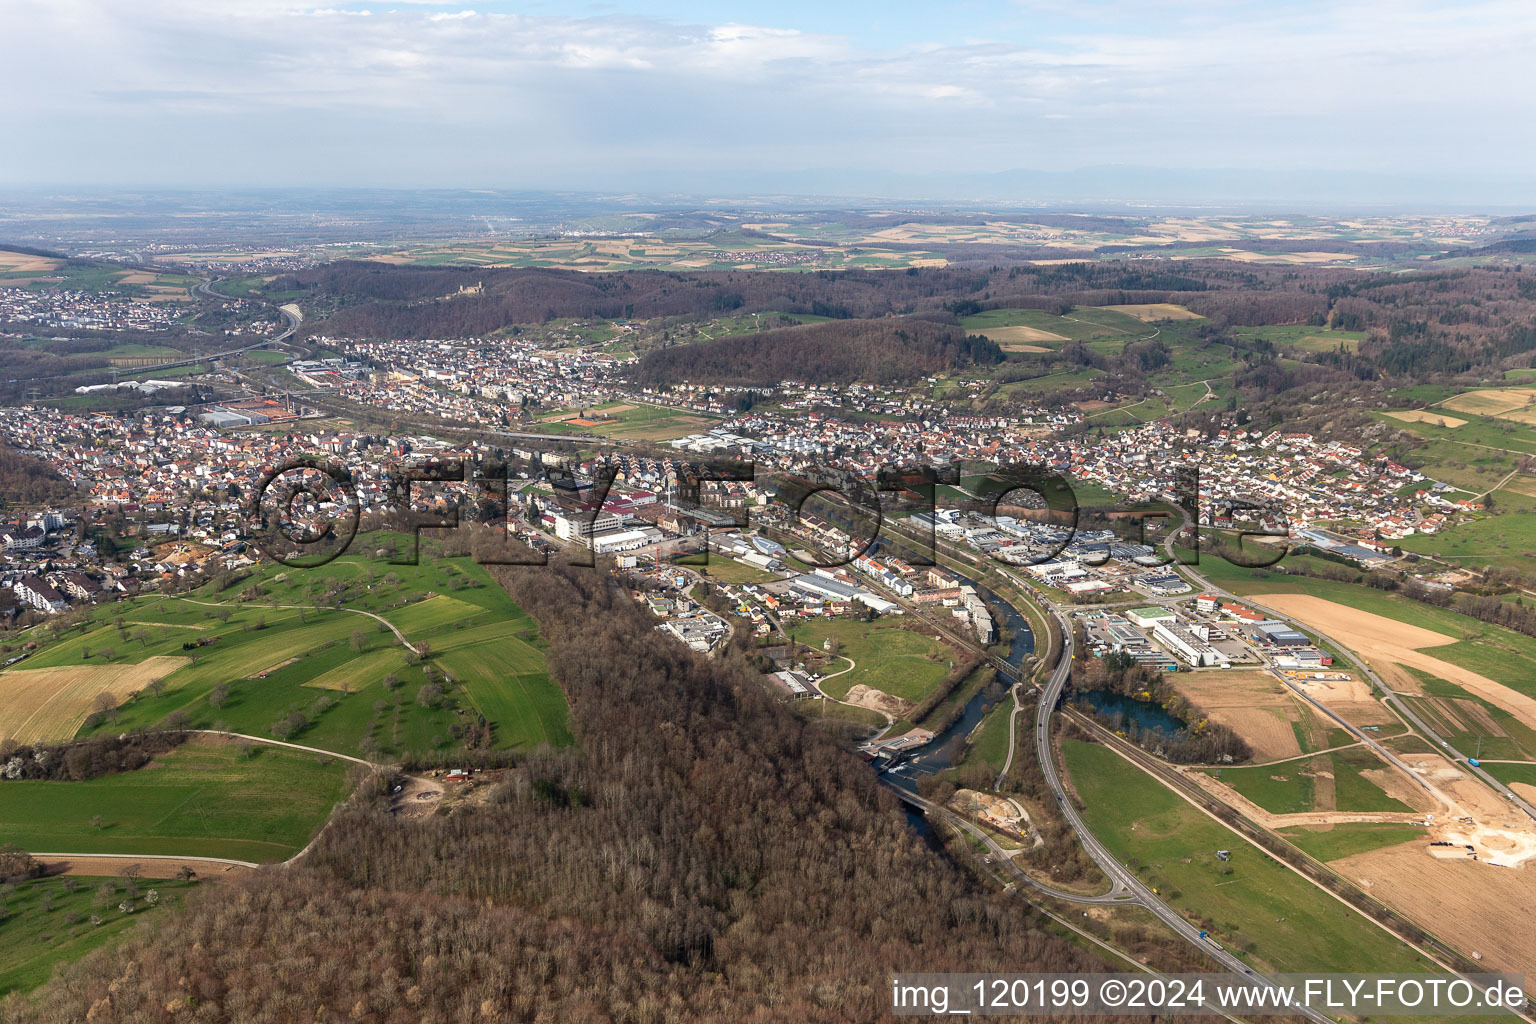 Vue aérienne de Districts de Brombach, Haagen et Hauingen dans la vallée de la Wiese à Lörrach dans le département Bade-Wurtemberg, Allemagne